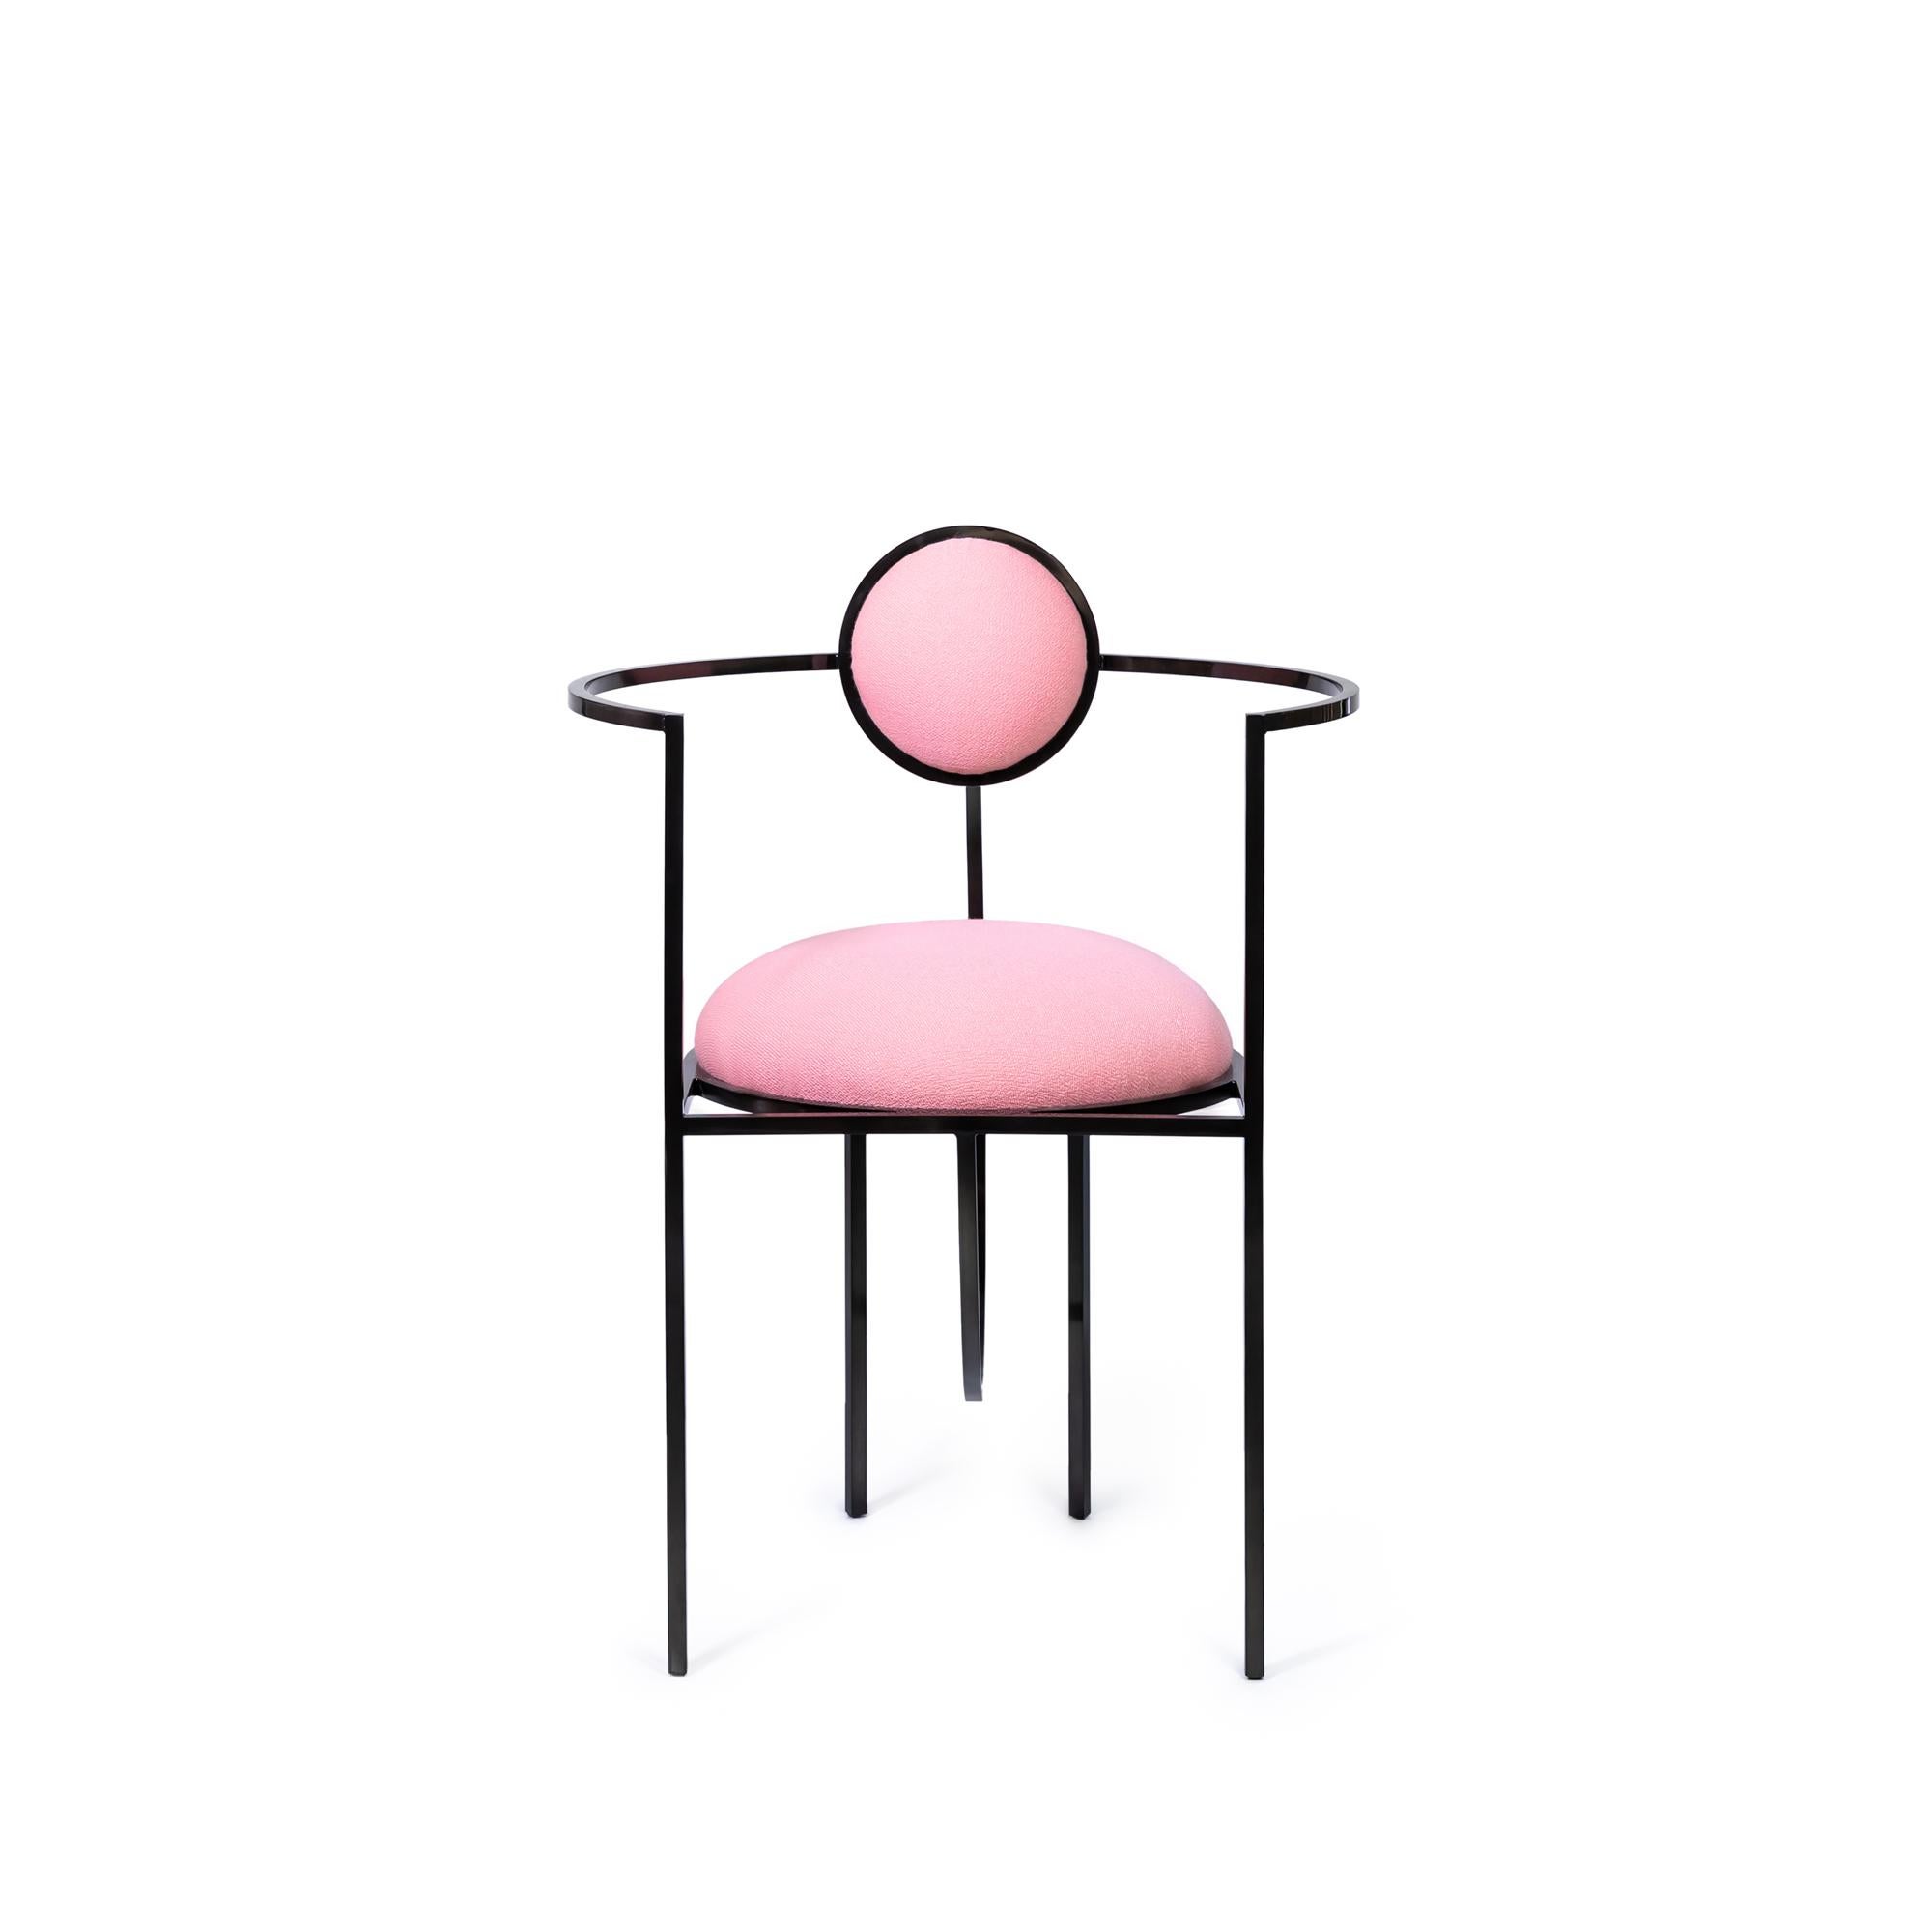 Dies ist das erste Mal, dass sich Bohinc mit einem Design-Favoriten beschäftigt: dem Stuhl.

In der Kollektion entwickelt Lara Bohinc ihre Sternmotive weiter, indem sie sich von Planeten- und Mondbahnen inspirieren lässt, deren gravitationsbedingt